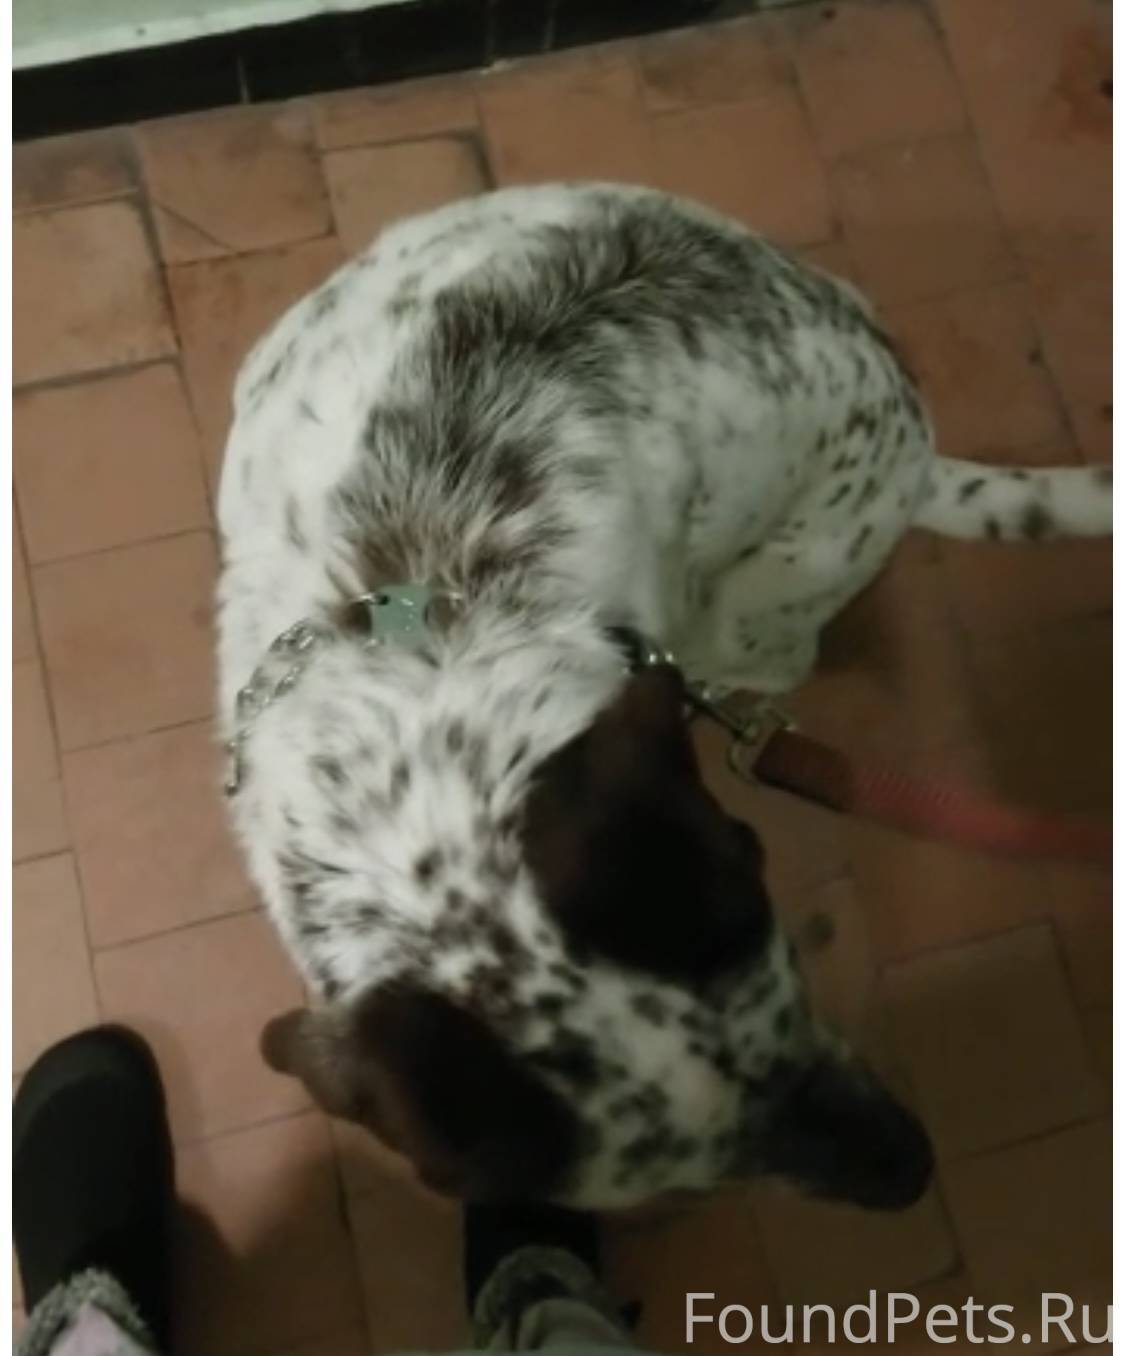 Найдена собака белая в пятнах